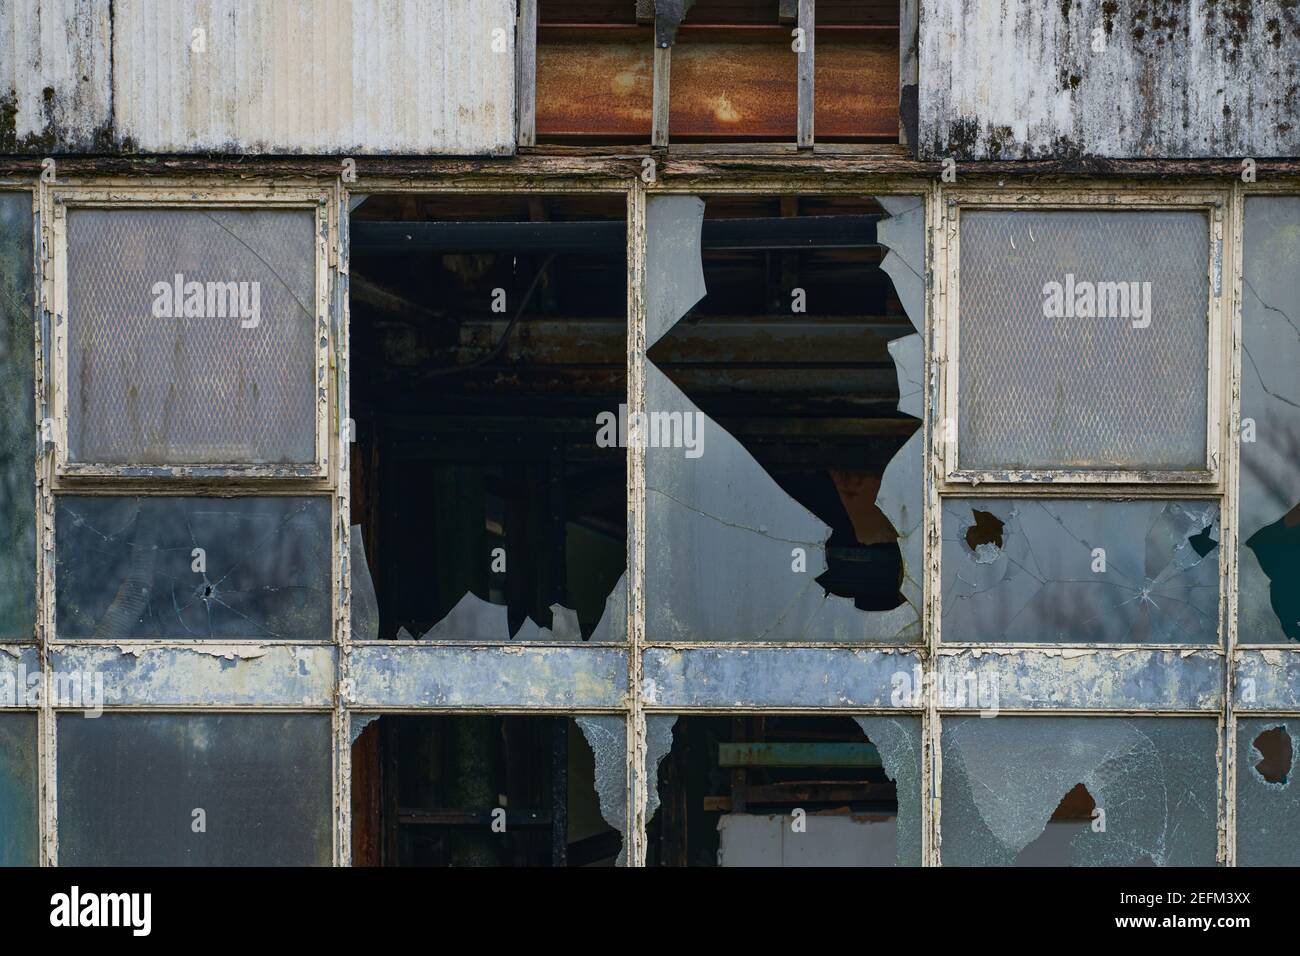 Usine abandonnée, vandalisée, toutes les fenêtres de ce bâtiment ont été cassées. Il s'agit d'une image haute résolution avec toute la zone de l'ip Banque D'Images